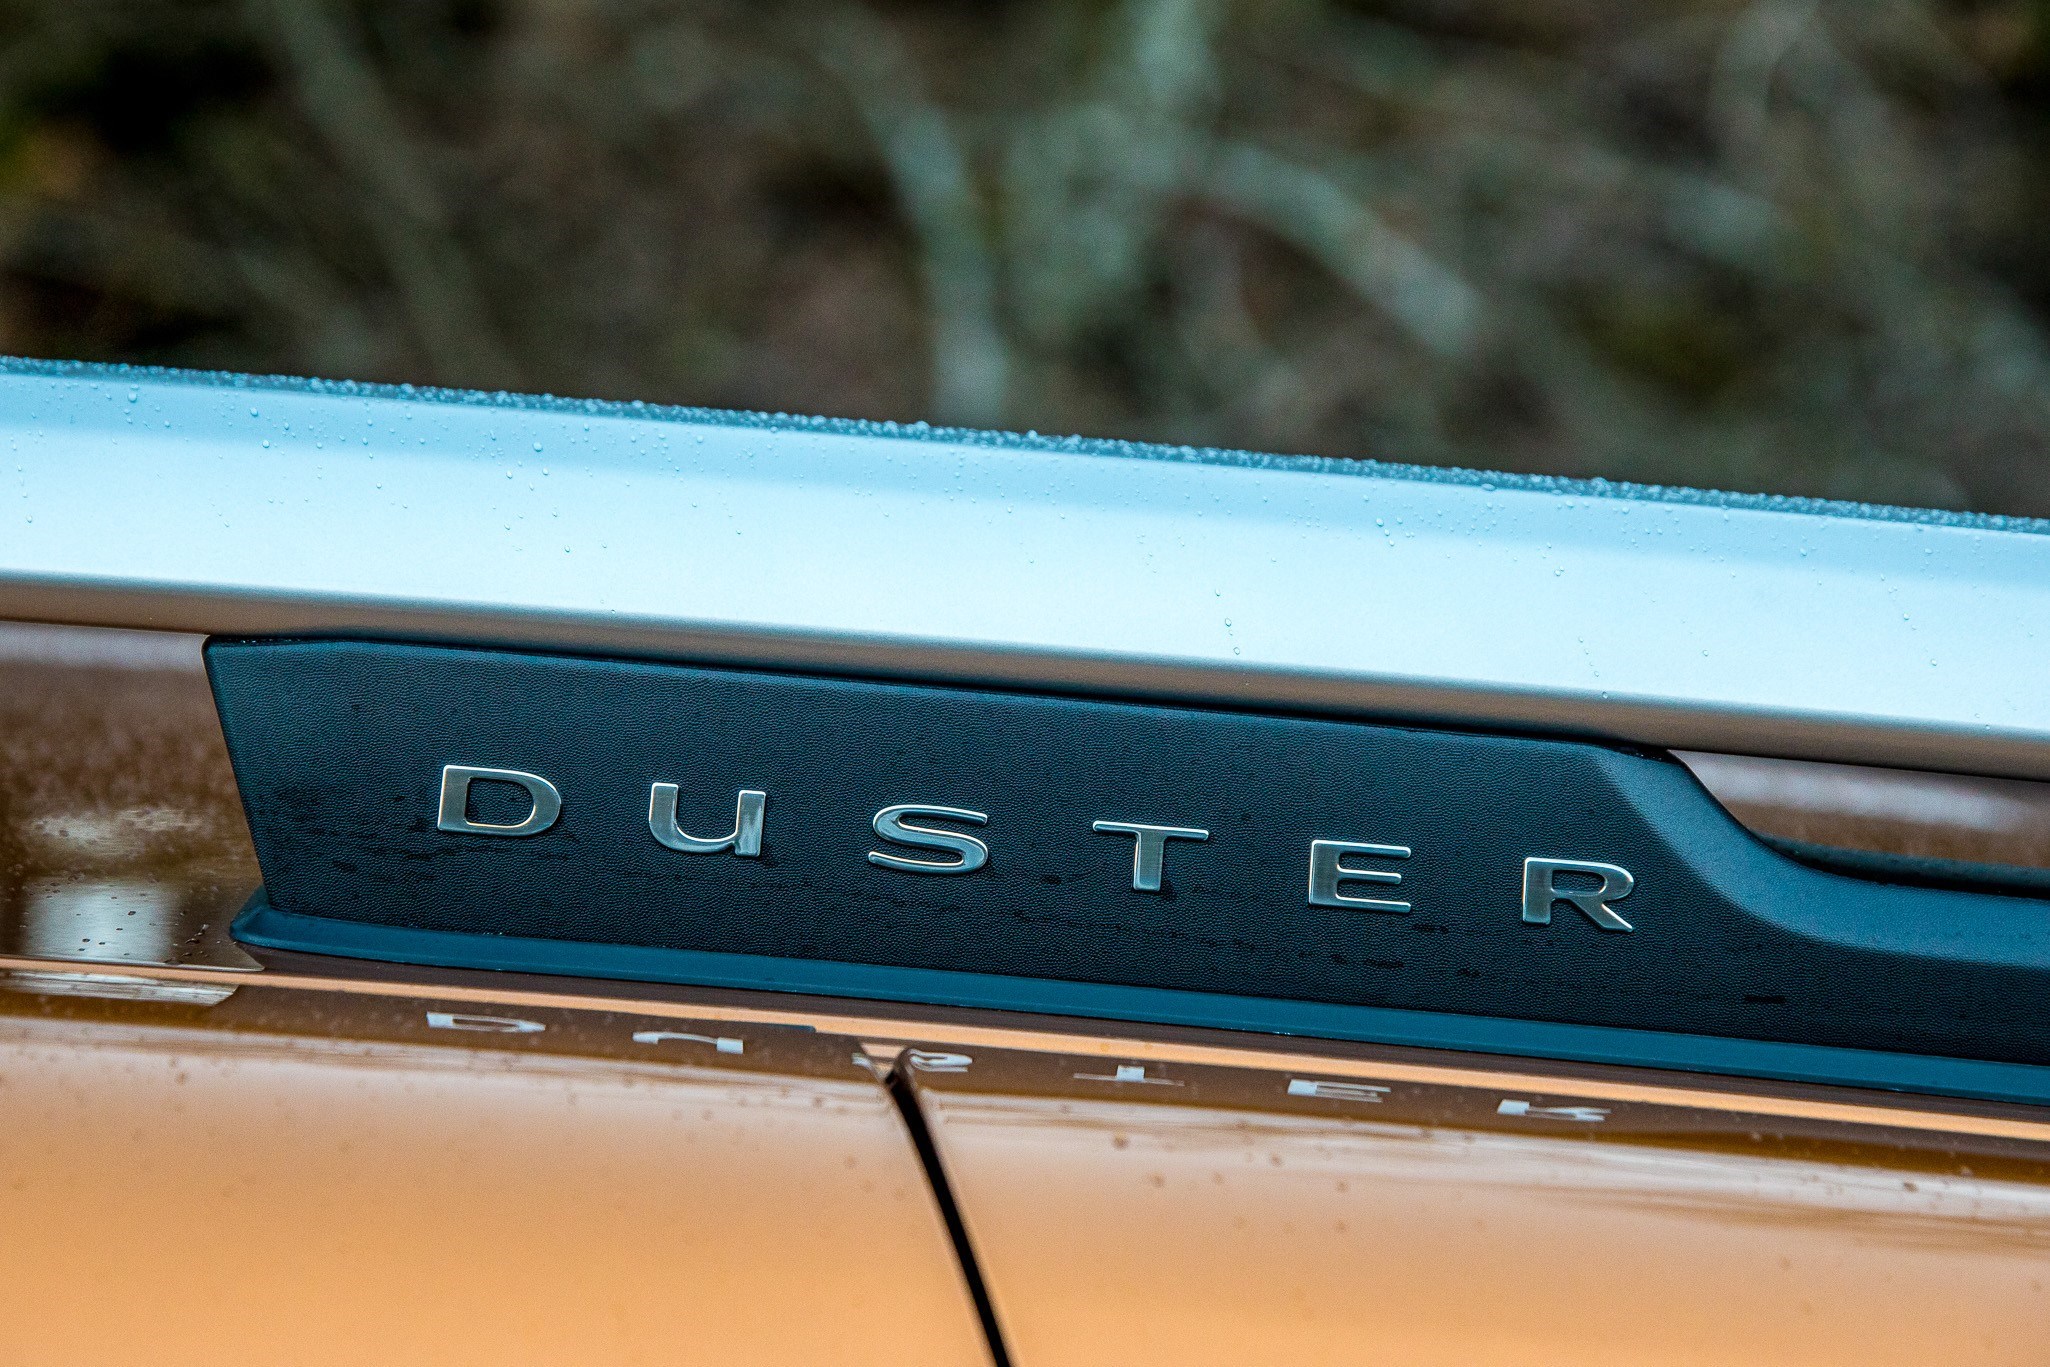 Nuova Dacia Duster